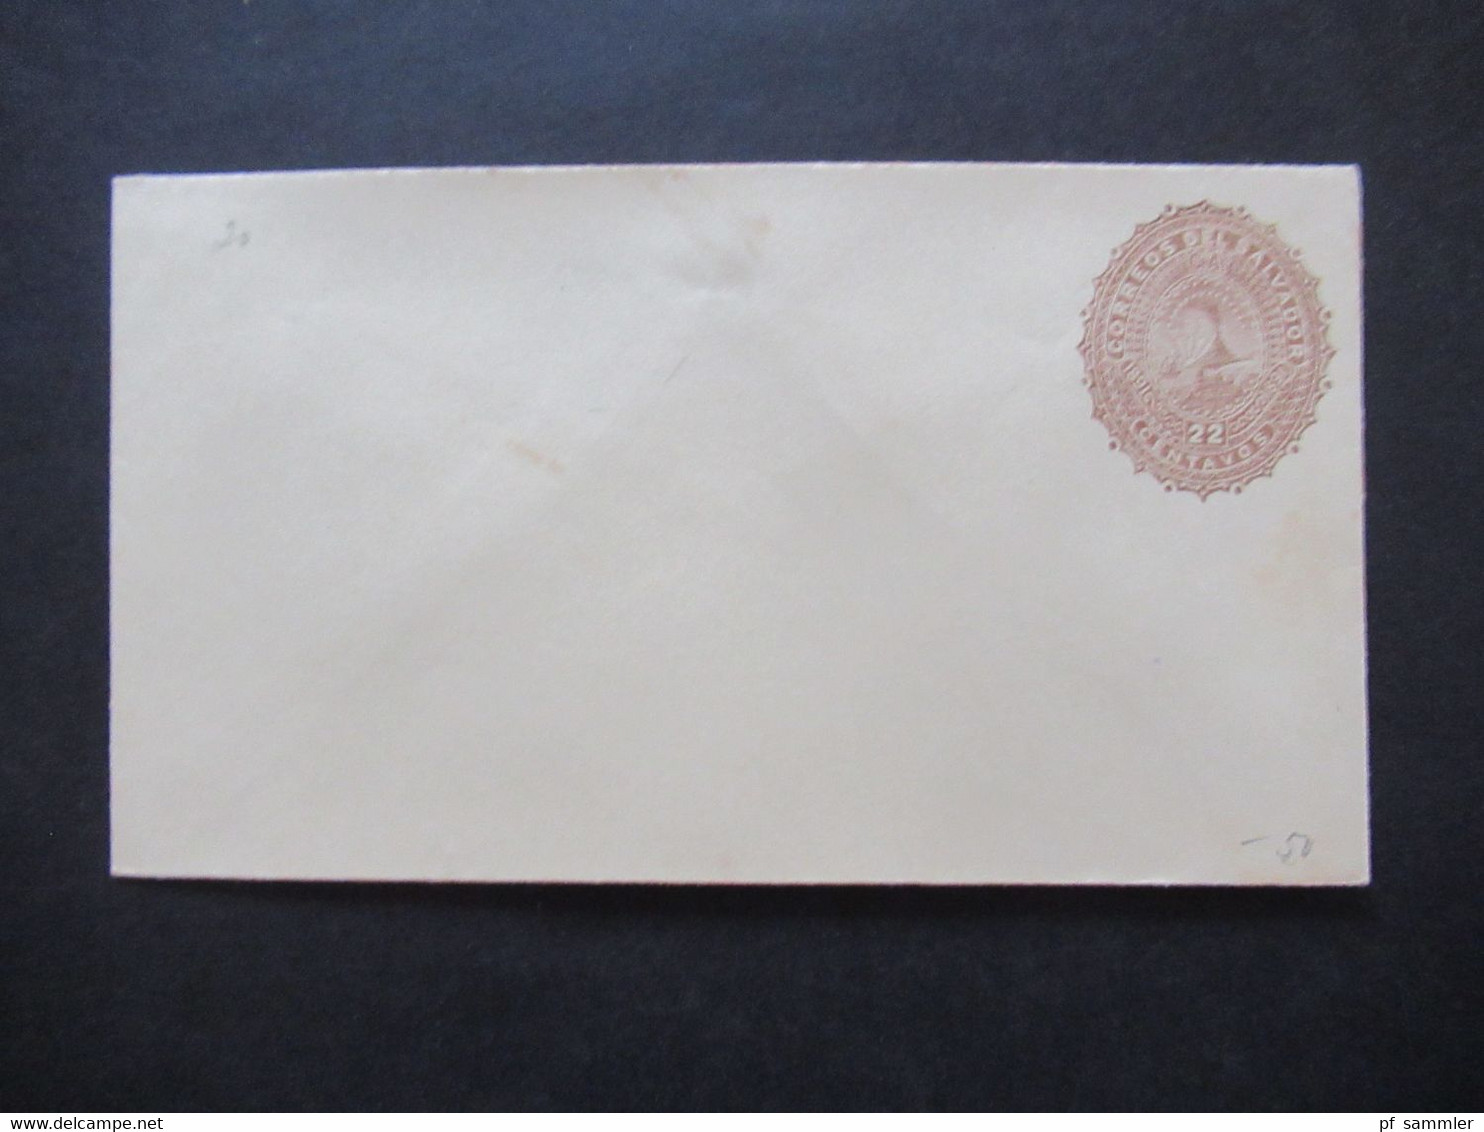 GA Posten ungebraucht Südamerika um 1890 Karten / Umschläge / Doppelkarten Uruguay, Venezuela, Salvador, Nicaragua